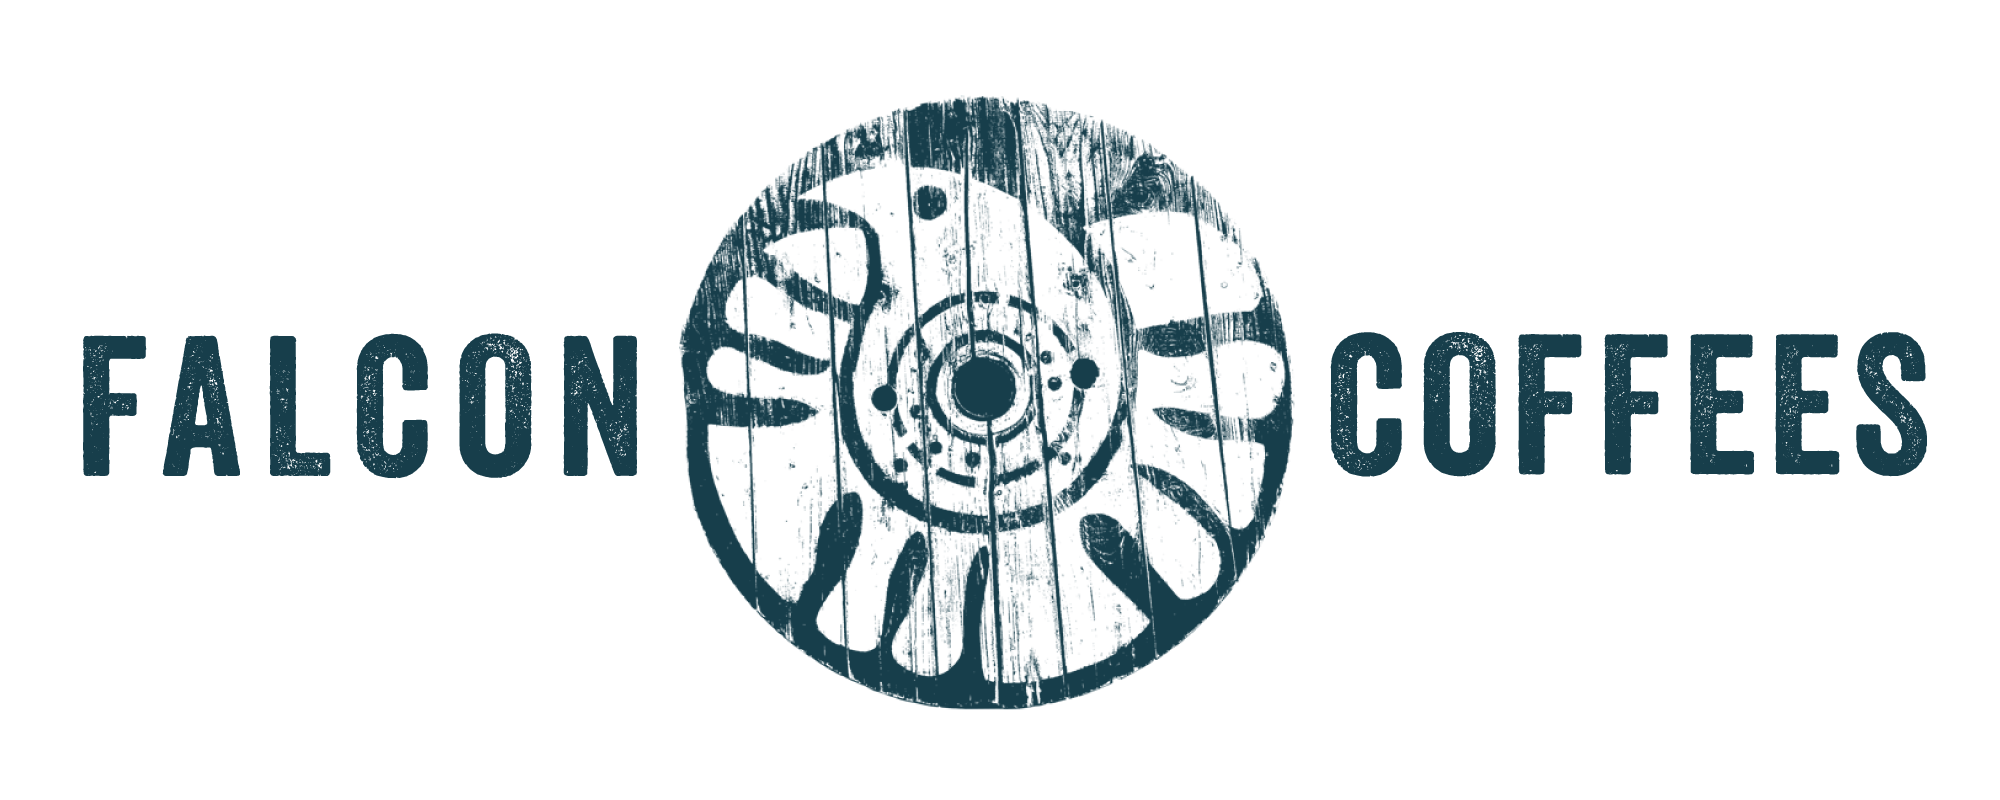 Falcon Coffees logo - green copy